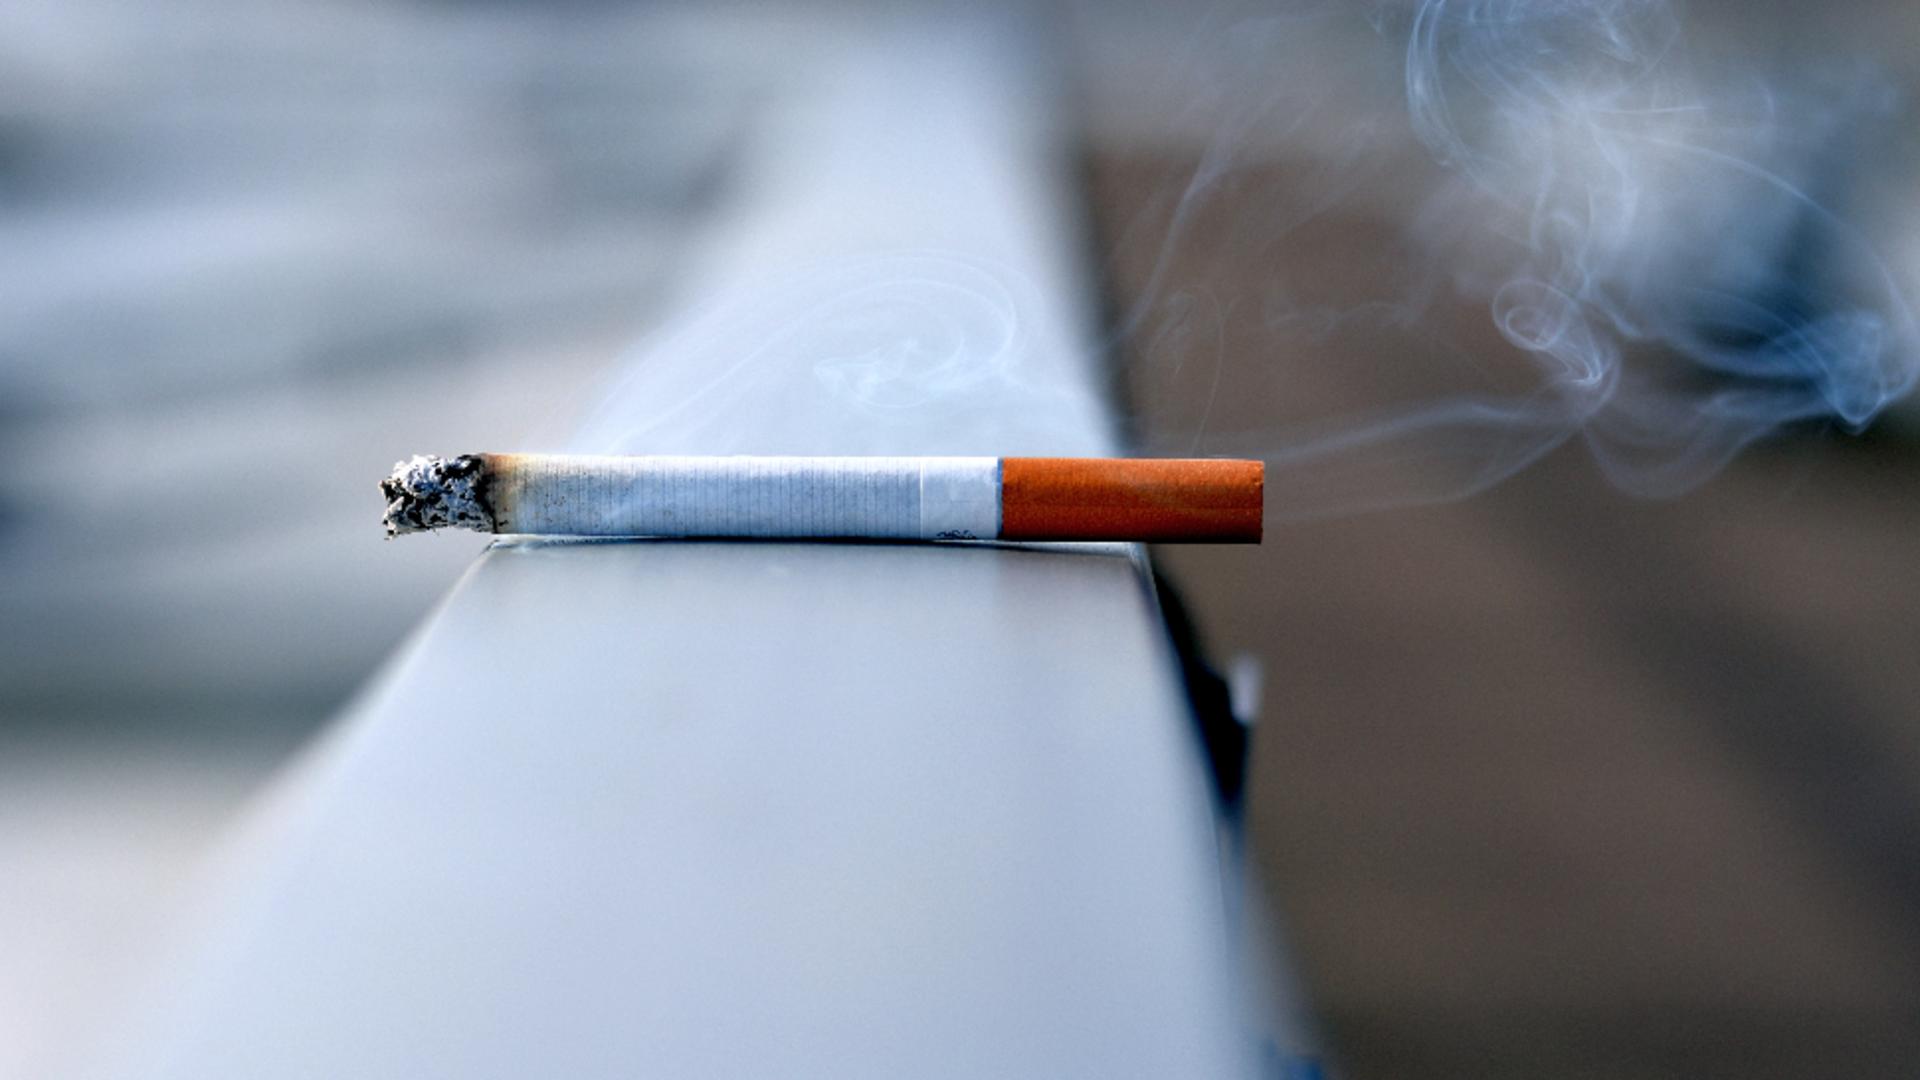 Fumătorii ar putea să-și ia adio de la această...plăcere! Proiect bombă la Senat - Ce RESTRICȚII se pregătesc /unsplash.com